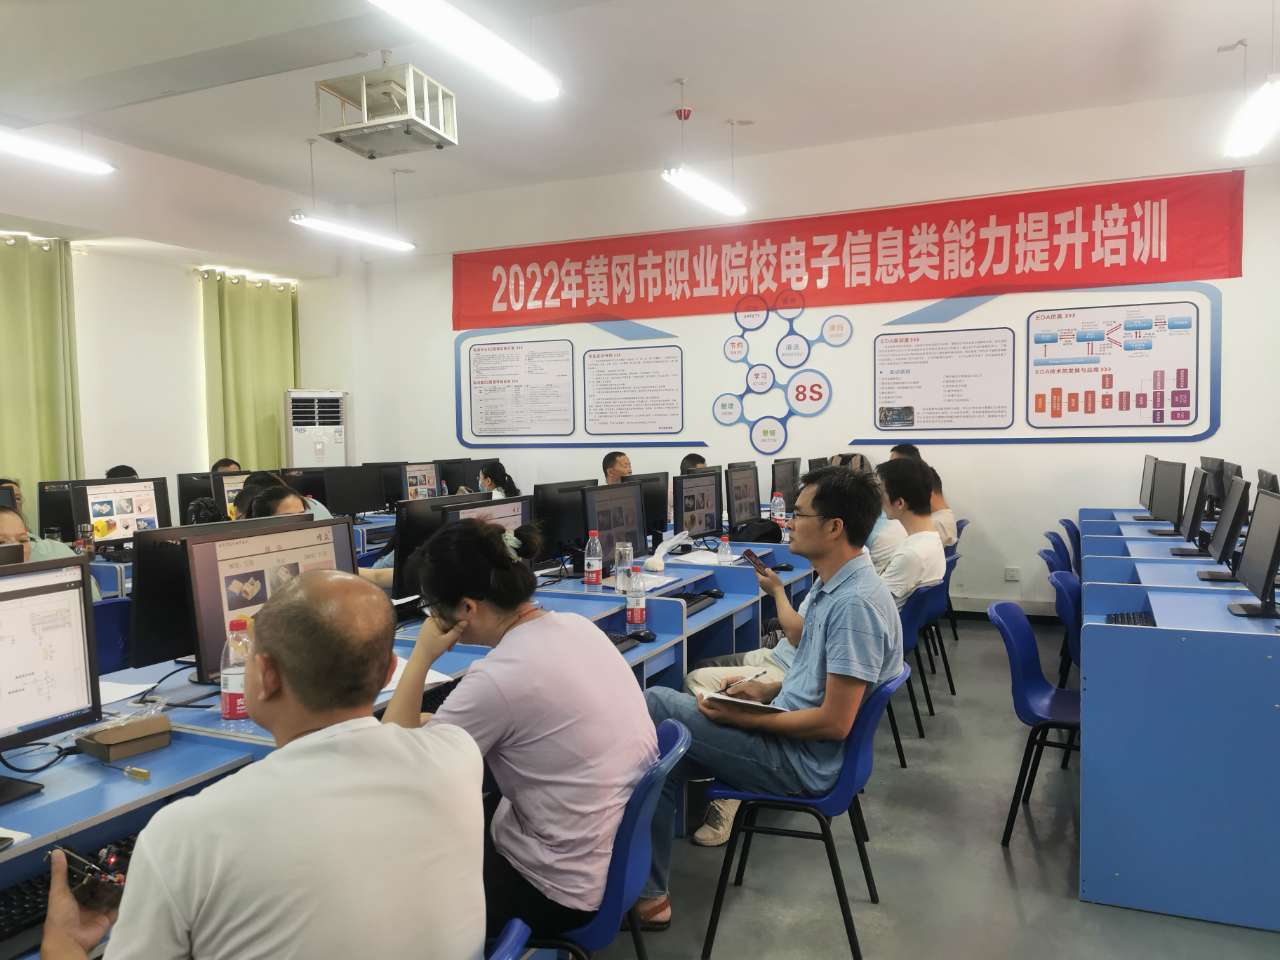 2022黄冈市职业院校电子与信息类教师能力提升培训班顺利开班